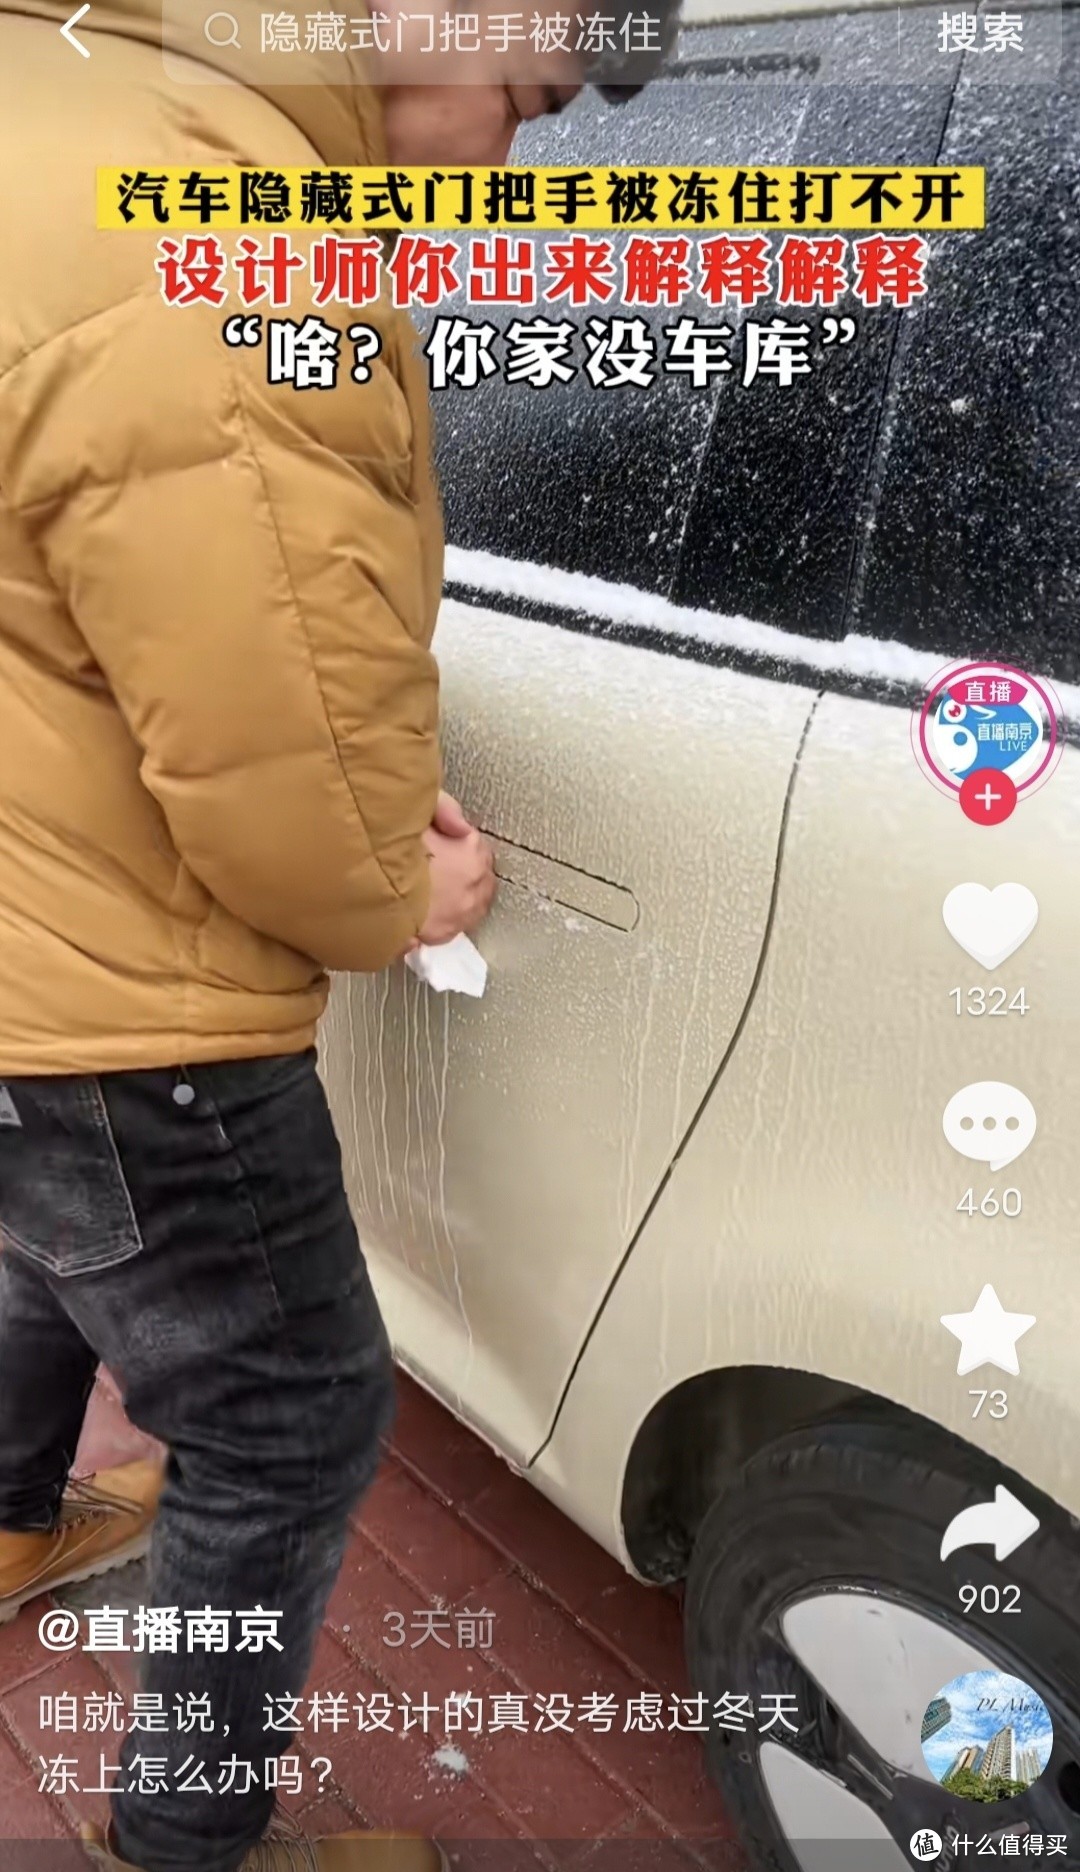 新能源汽车低温雨雪天气初体验